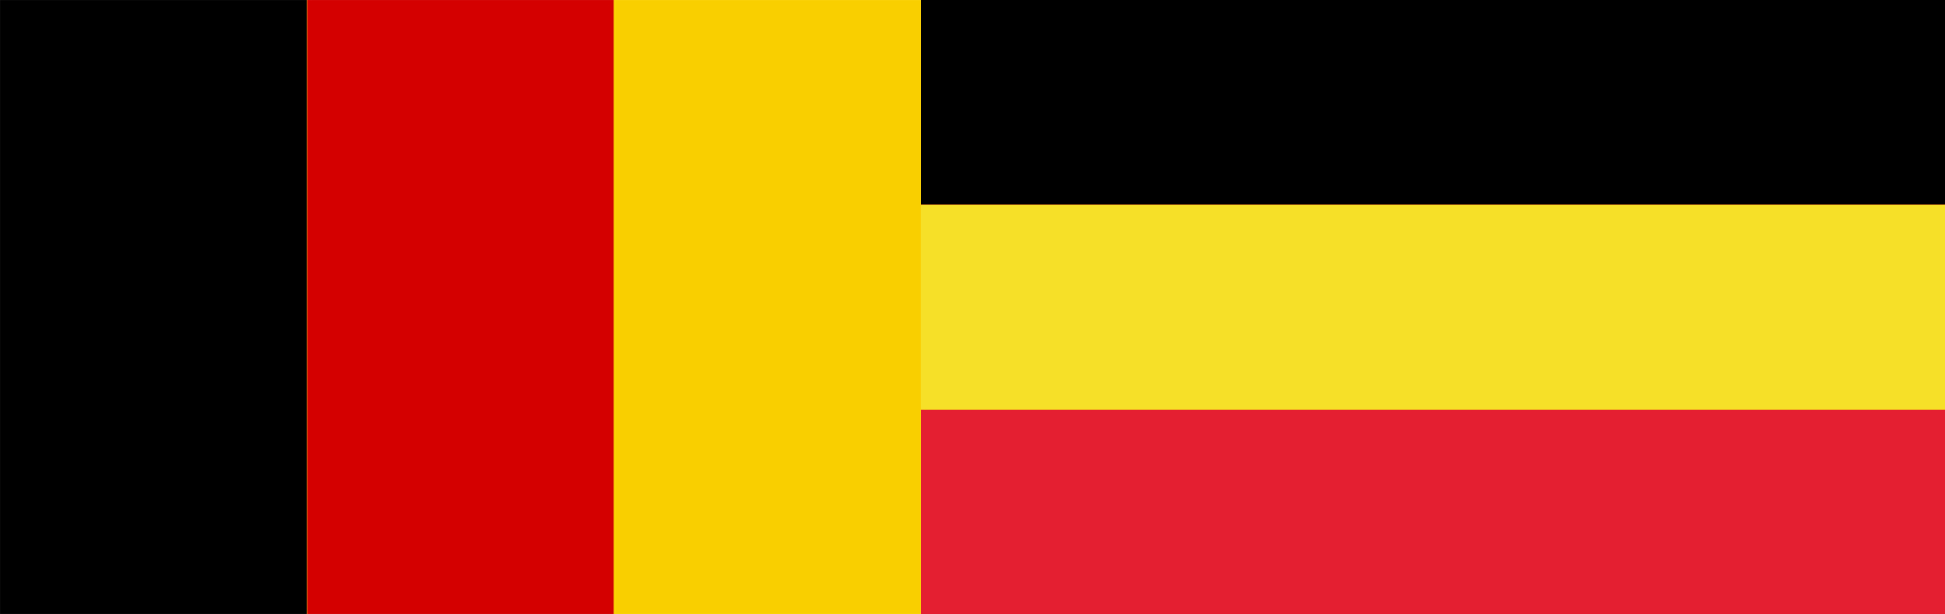 Флаг националистической Бельгии